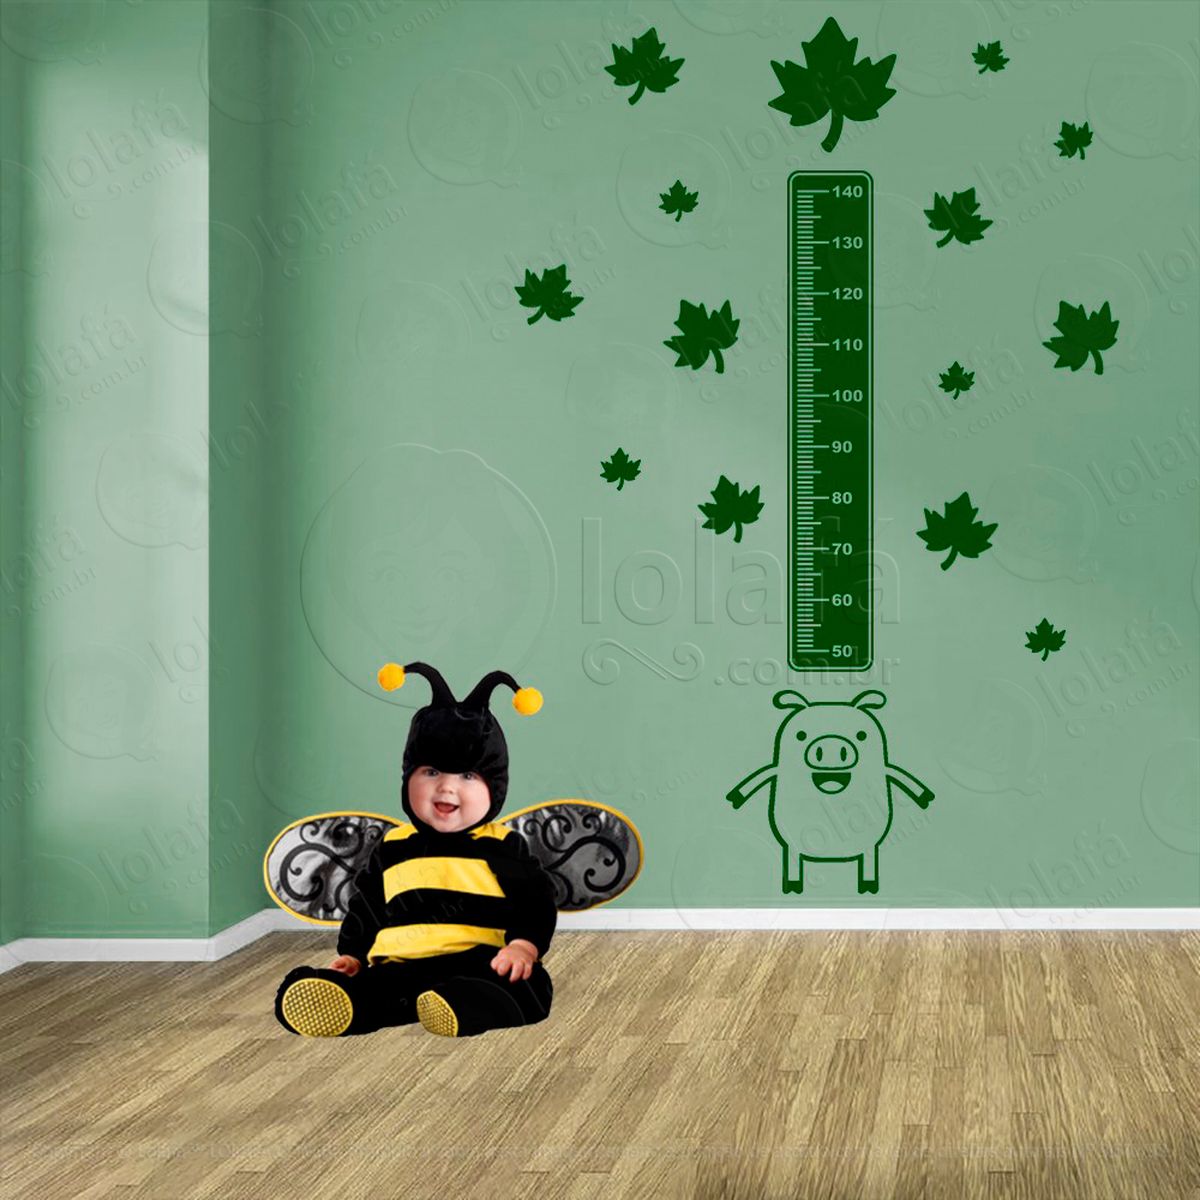 porco e folhas adesivo régua de crescimento infantil, medidor de altura para quarto, porta e parede - mod:1010